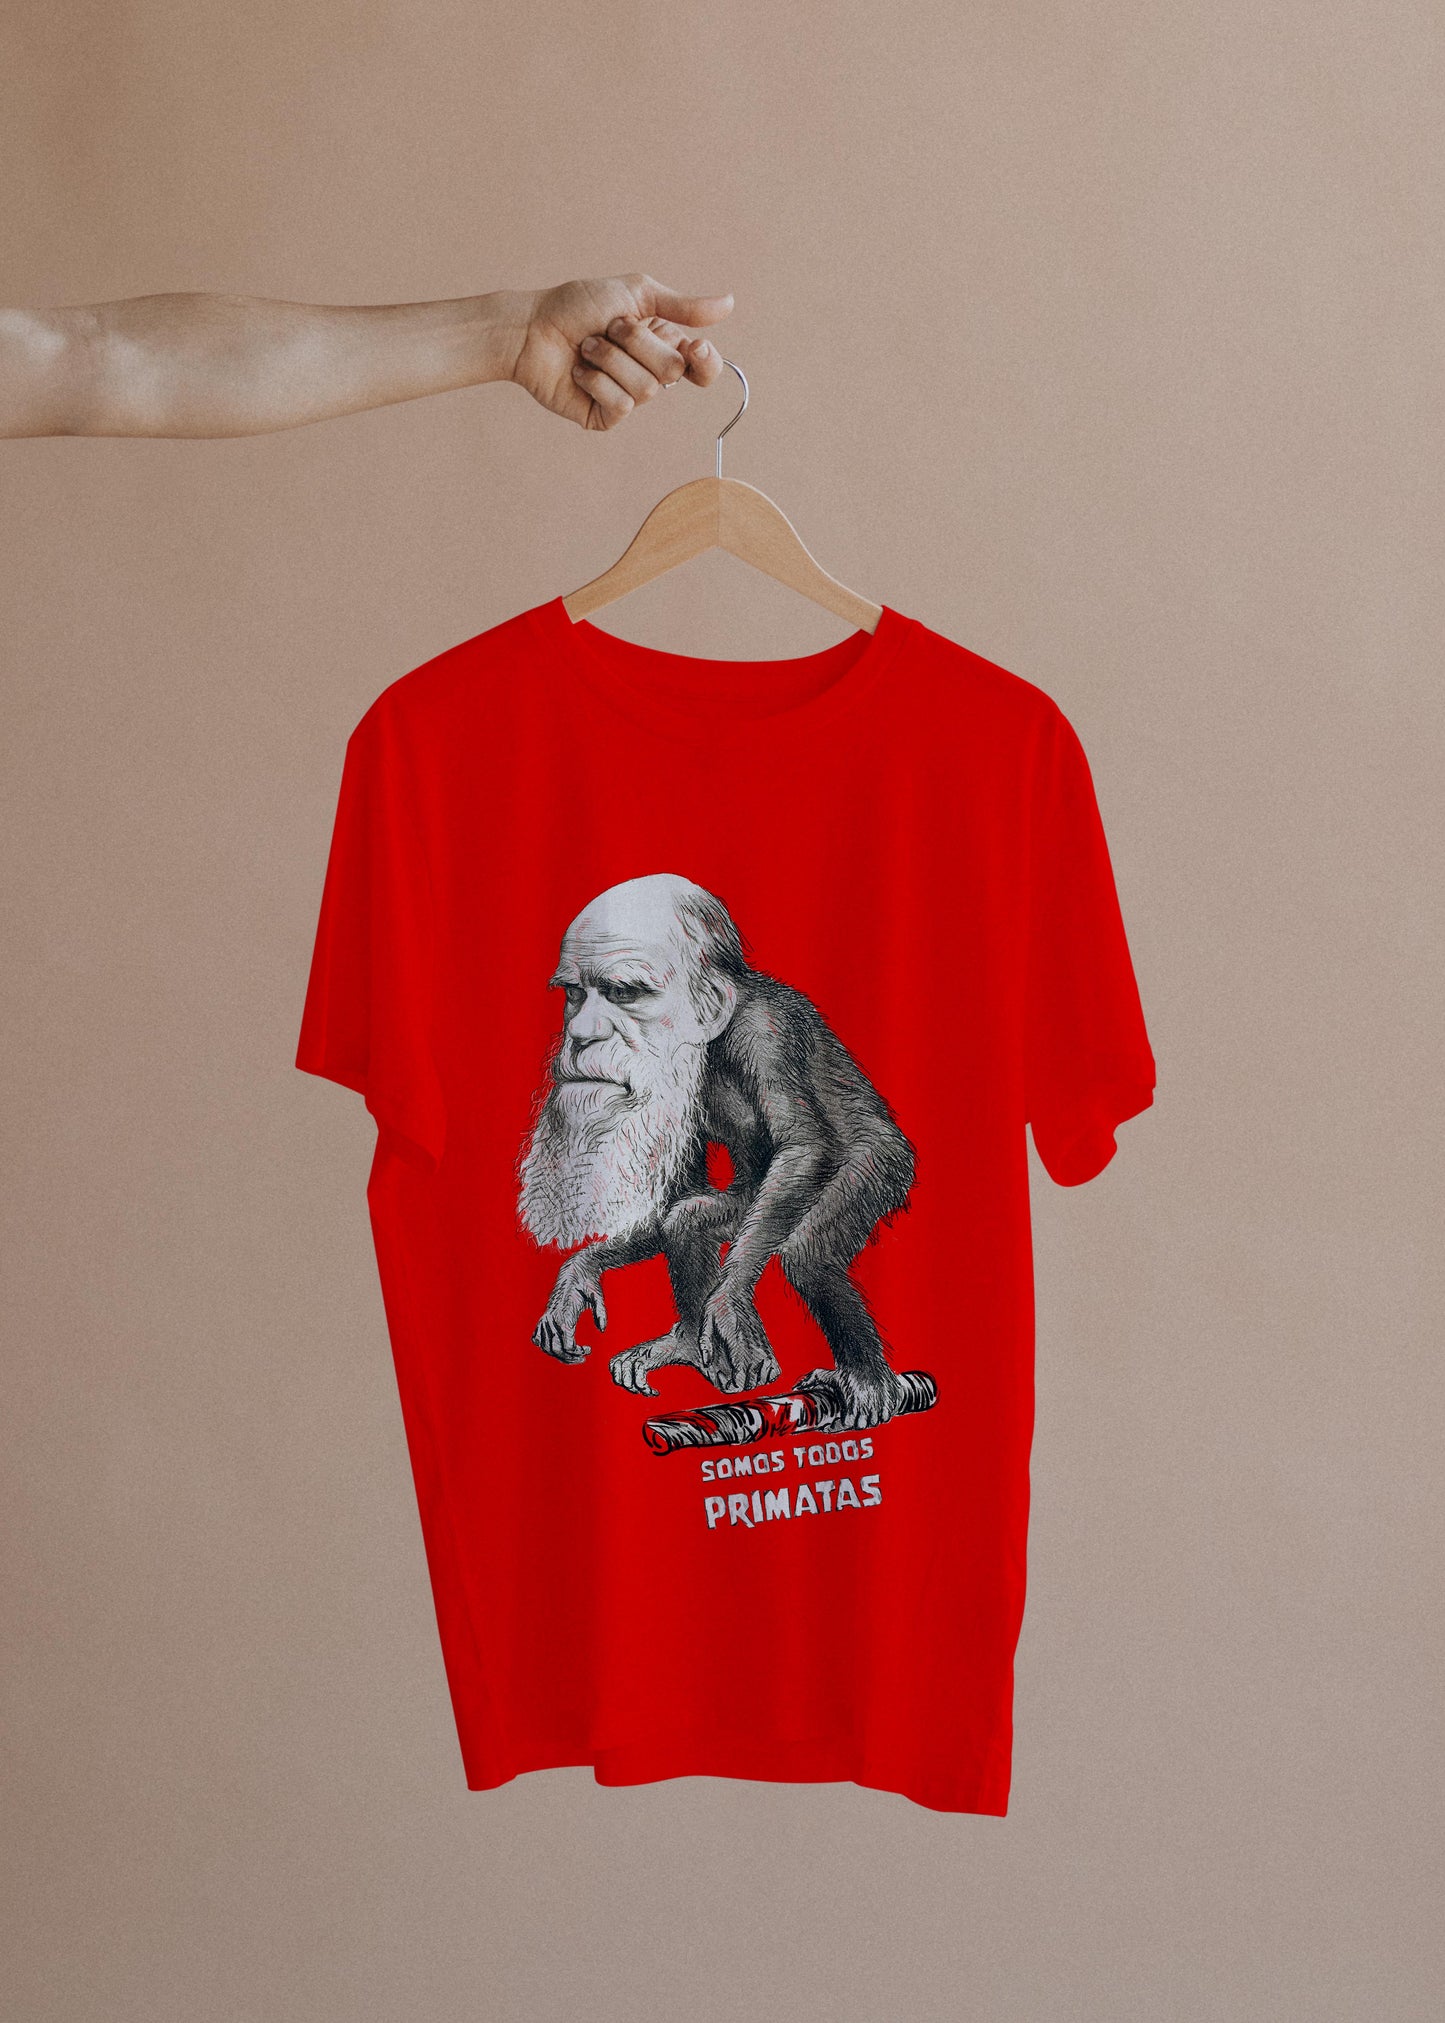 Camiseta Somos Todos Primatas - Darwin - Masculino -camiseta- Editora Datum